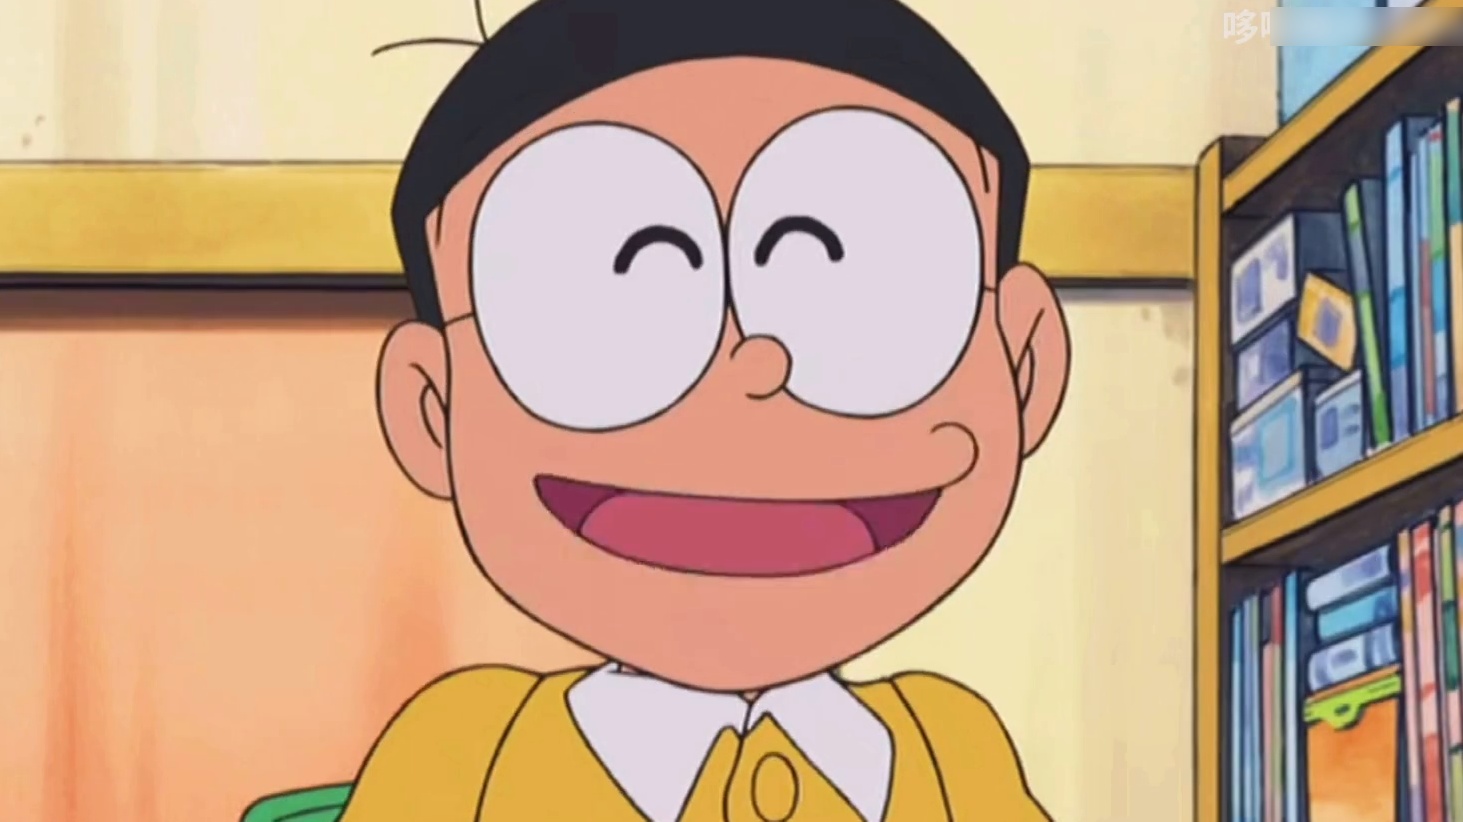 Avatar: Sự lựa chọn avatar thật ấn tượng và đẹp mắt là điều mà hầu hết mọi người mong muốn trong cuộc sống thường ngày. Với công nghệ tiên tiến và phong cách thiết kế độc đáo, hình đại diện độc quyền của mình sẽ được tạo ra chỉ trong vài cú nhấp chuột. Chỉ cần truy cập vào trang web của chúng tôi, sử dụng công cụ dễ sử dụng và chọn cho mình một avatar theo ý thích.

Nobita: Nobita, nhân vật chính trong bộ truyện tranh nổi tiếng Doraemon, đã trở thành nguồn cảm hứng cho nhiều thế hệ trẻ em Việt Nam. Năm 2024, chúng tôi đã sản xuất ra một sản phẩm đặc biệt với hình ảnh Nobita đáng yêu. Hãy đến với trang web của chúng tôi để xem và sở hữu sản phẩm độc đáo này.

Cute: Từ những chú chó lùn nhỏ bé đáng yêu cho tới những bộ lông mềm mịn, cute là thứ gì đó mà chúng ta luôn muốn sở hữu. Trang web của chúng tôi tự hào giới thiệu đến bạn những hình ảnh động vật nhỏ bé xinh xắn nhất trong tự nhiên. Hãy truy cập vào trang web của chúng tôi để xem những bức ảnh đáng yêu này.